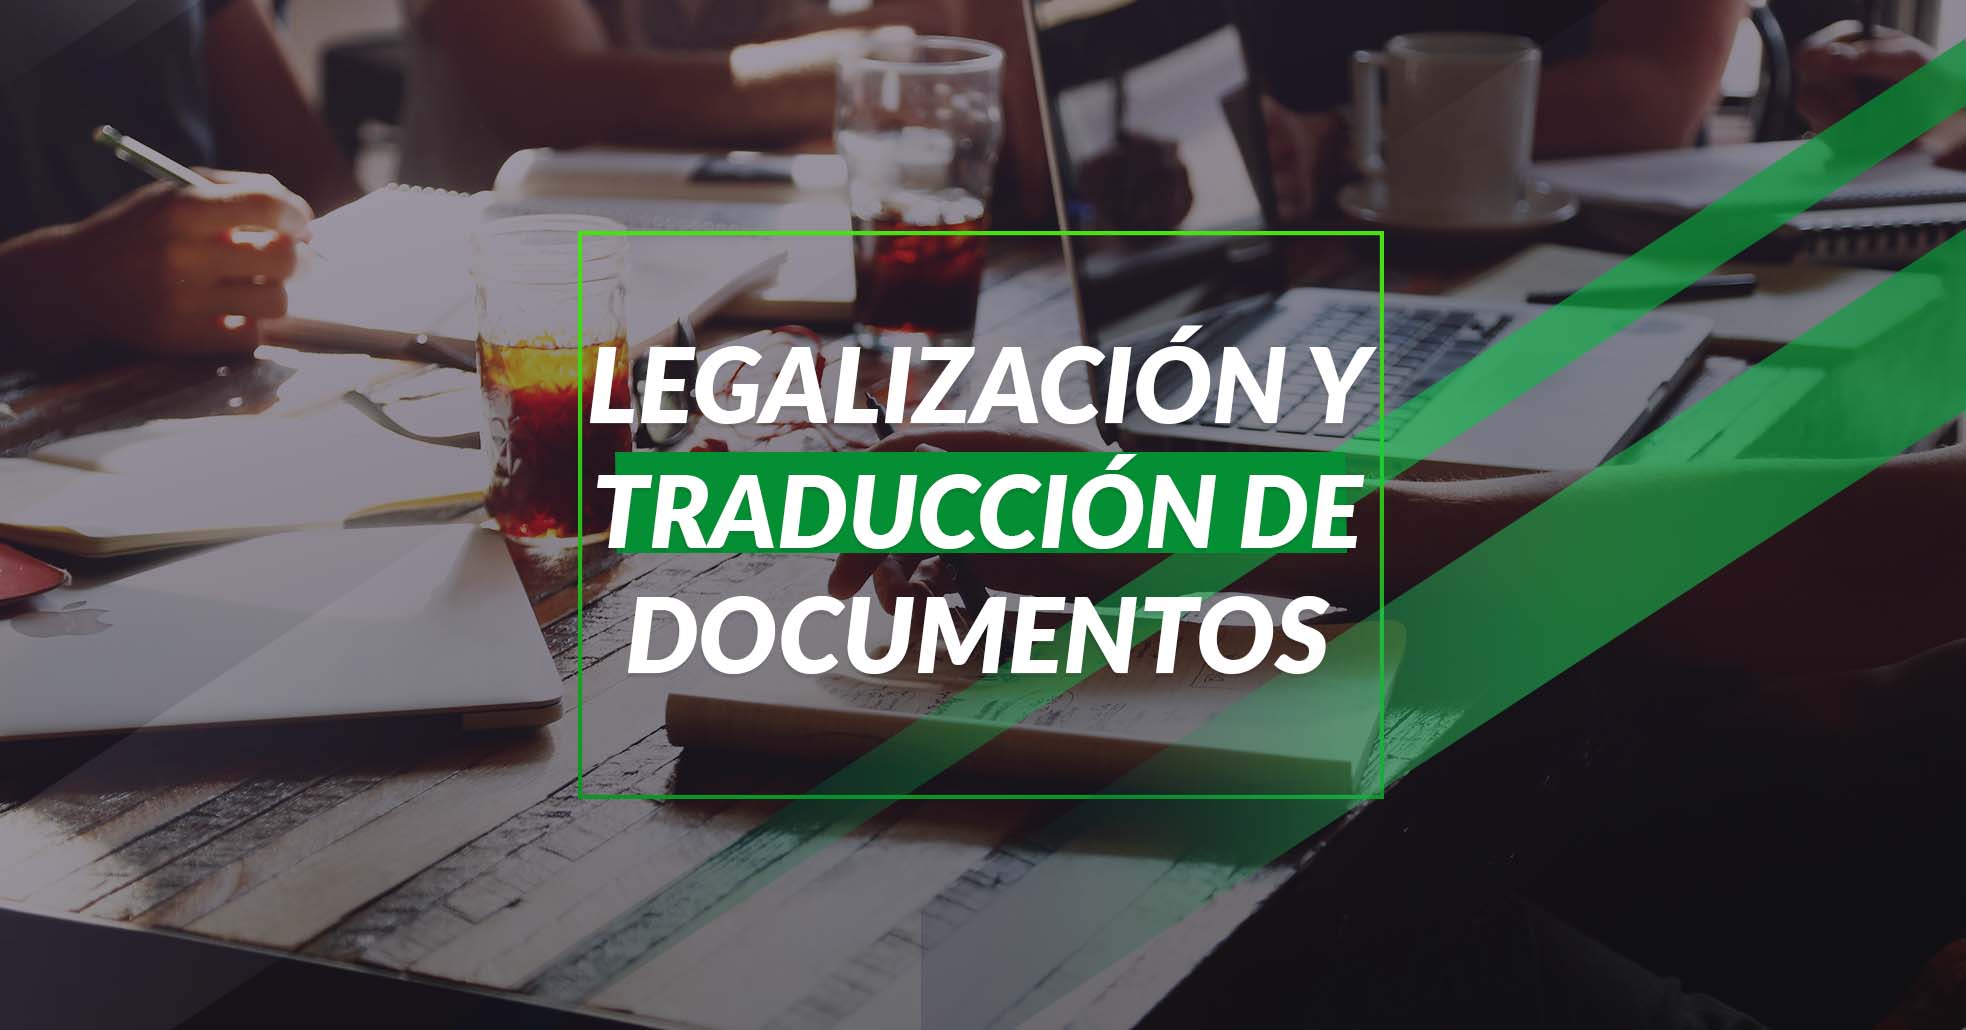 98 Legalización Y Traducción De Documentos